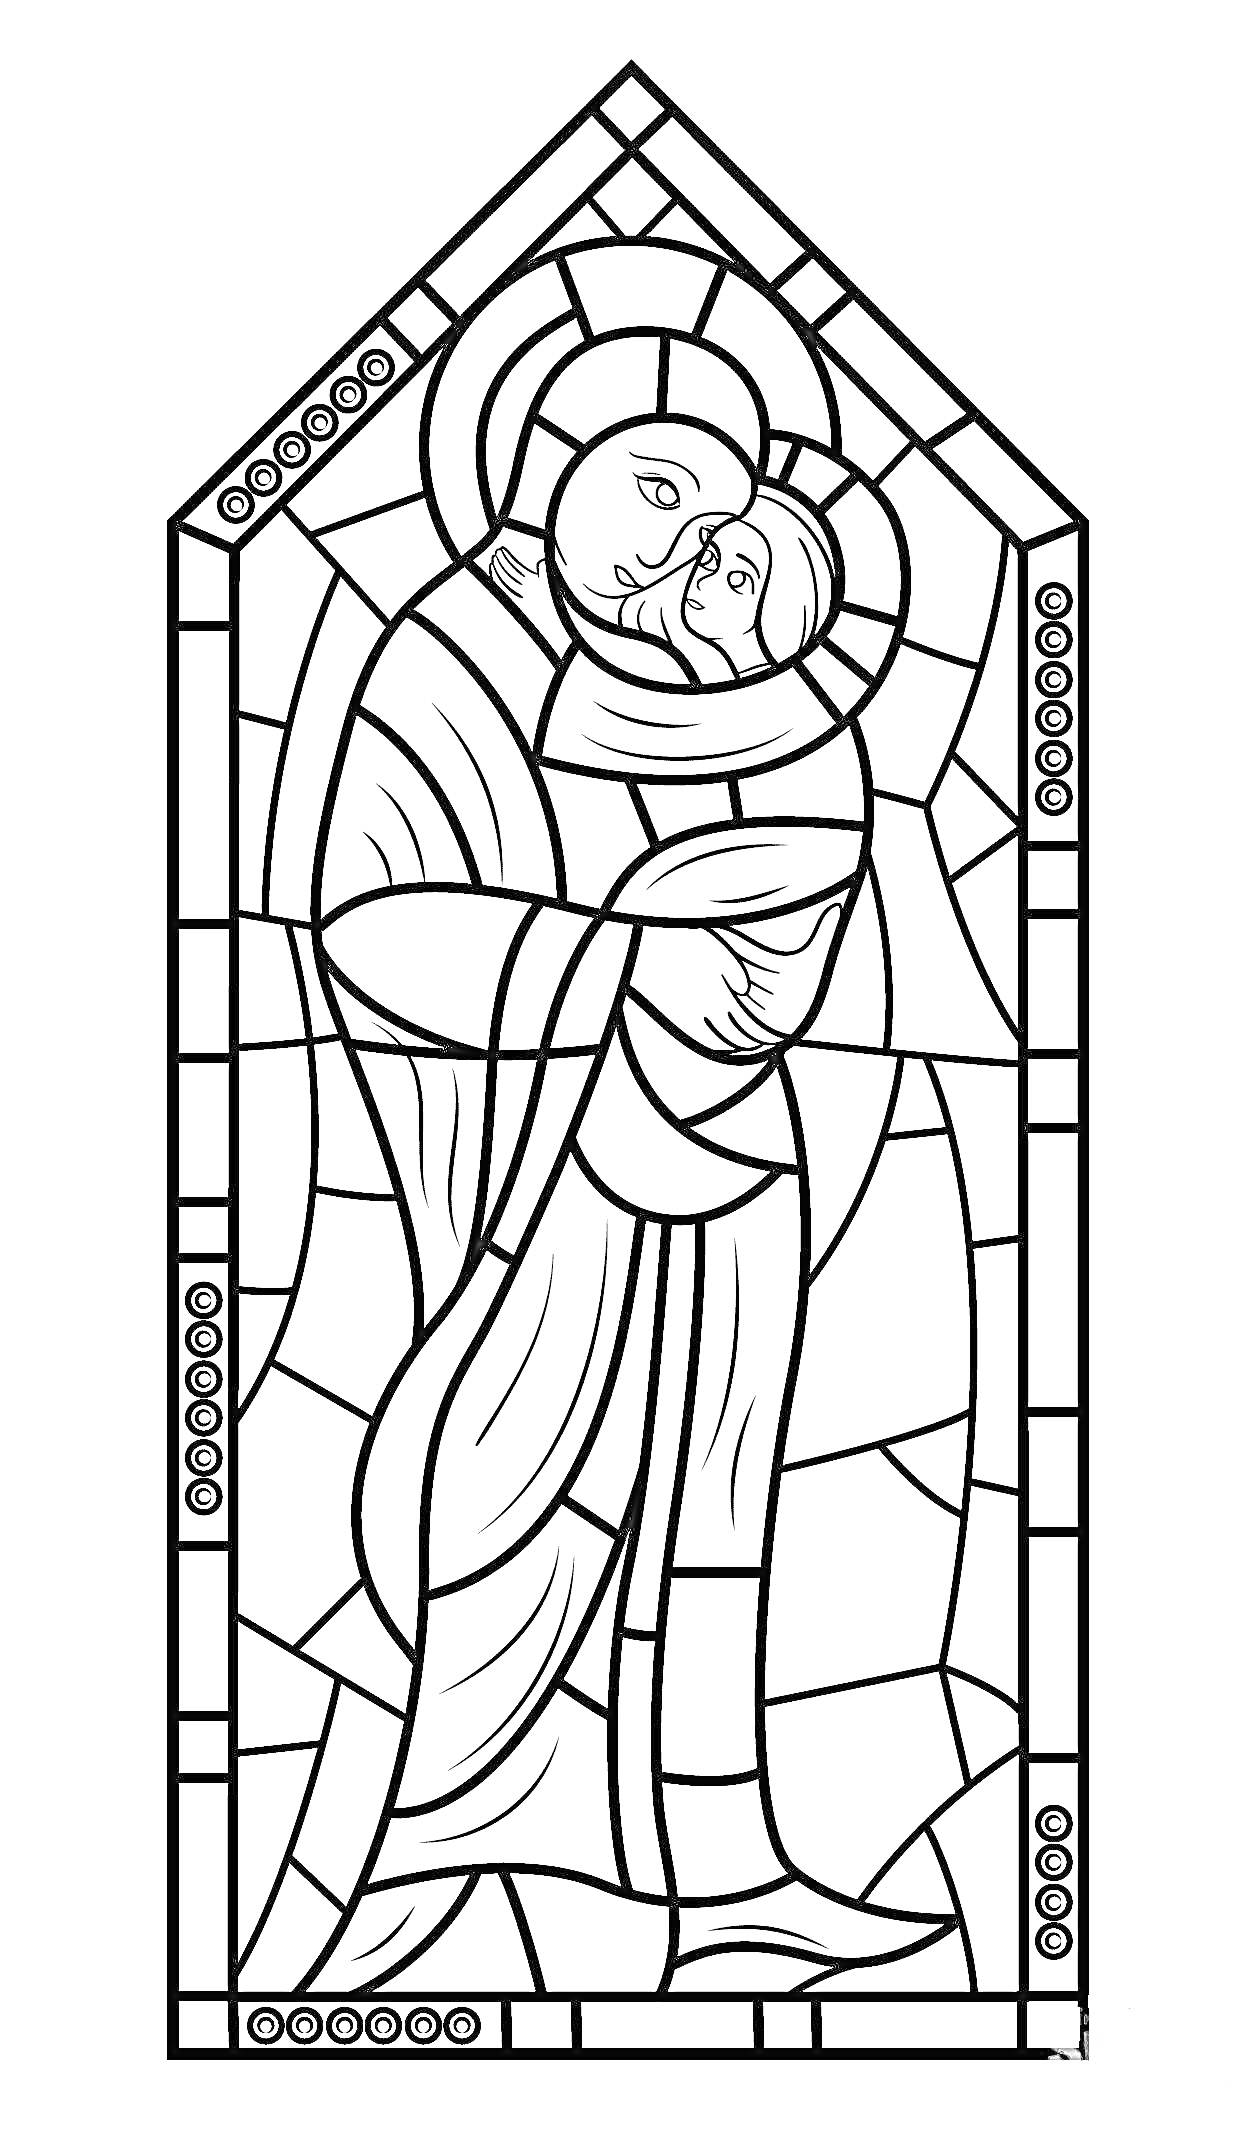 Витраж с изображением святого с младенцем в объятиях, оформленный в форме арочного окна с геометрическими элементами и круглыми узорами по бокам